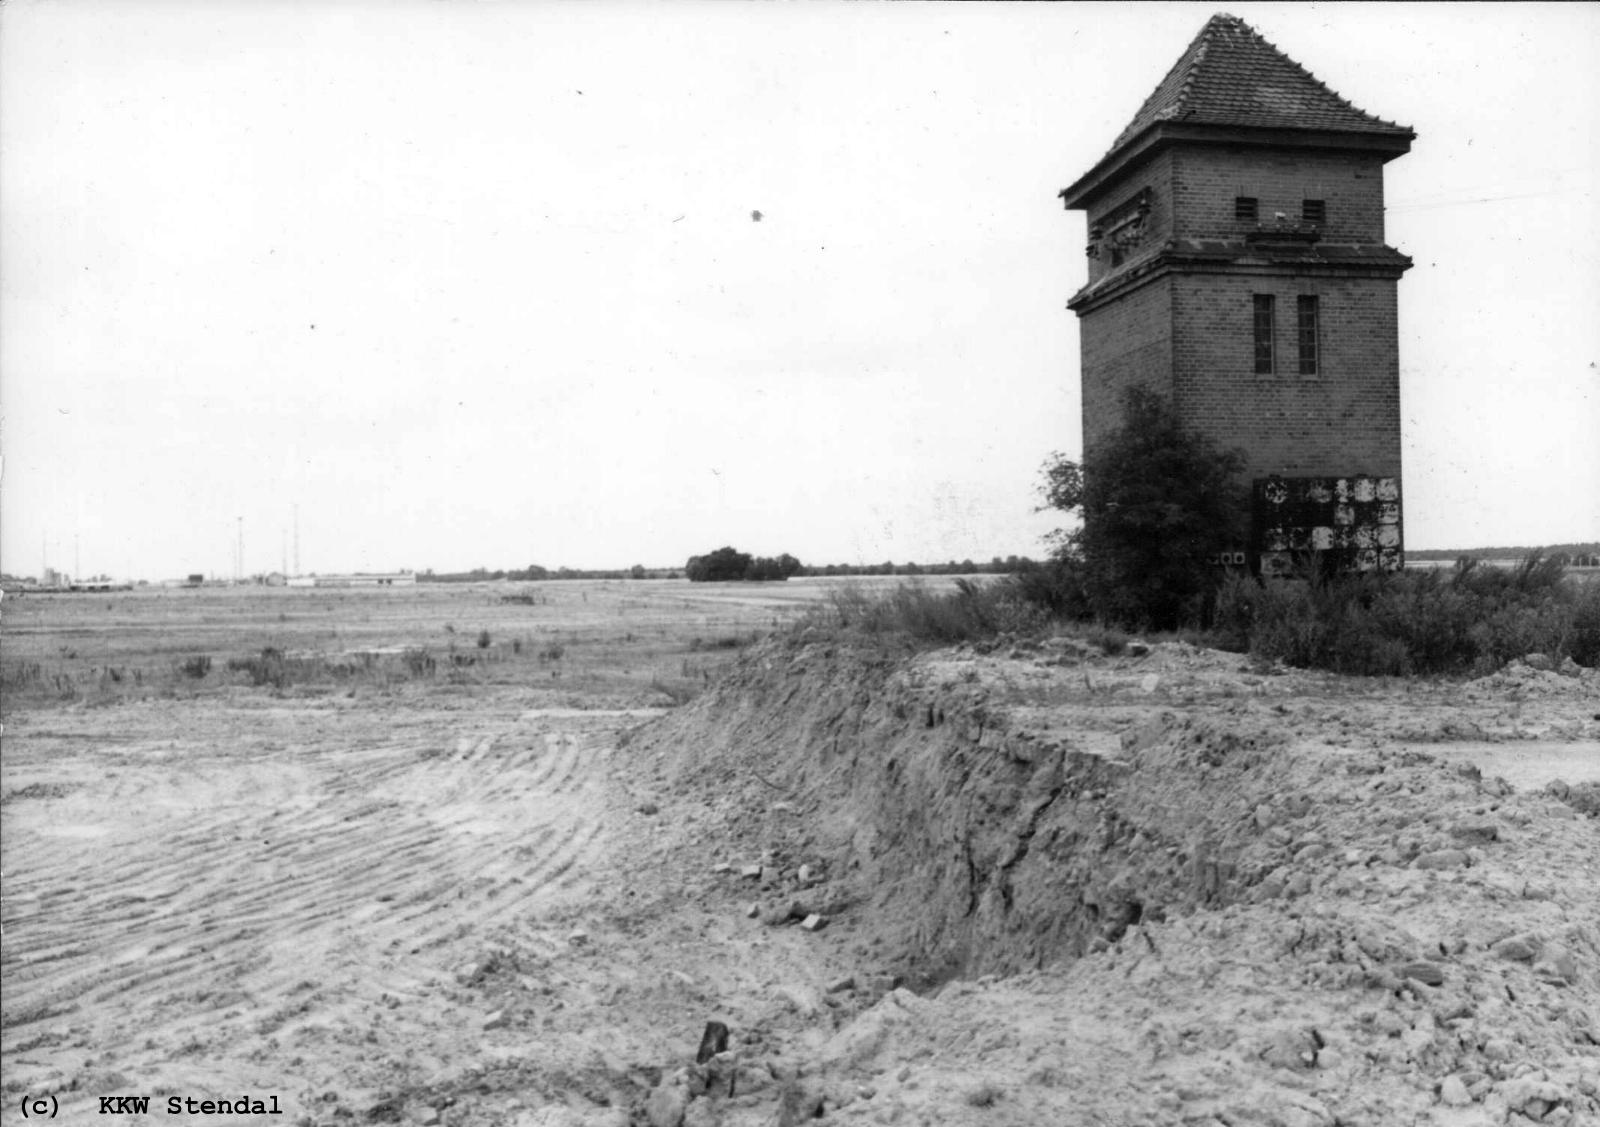  Baustellenfoto 1978, Trafohaus Niedergörne letztes Bauwerk des Dorfes 